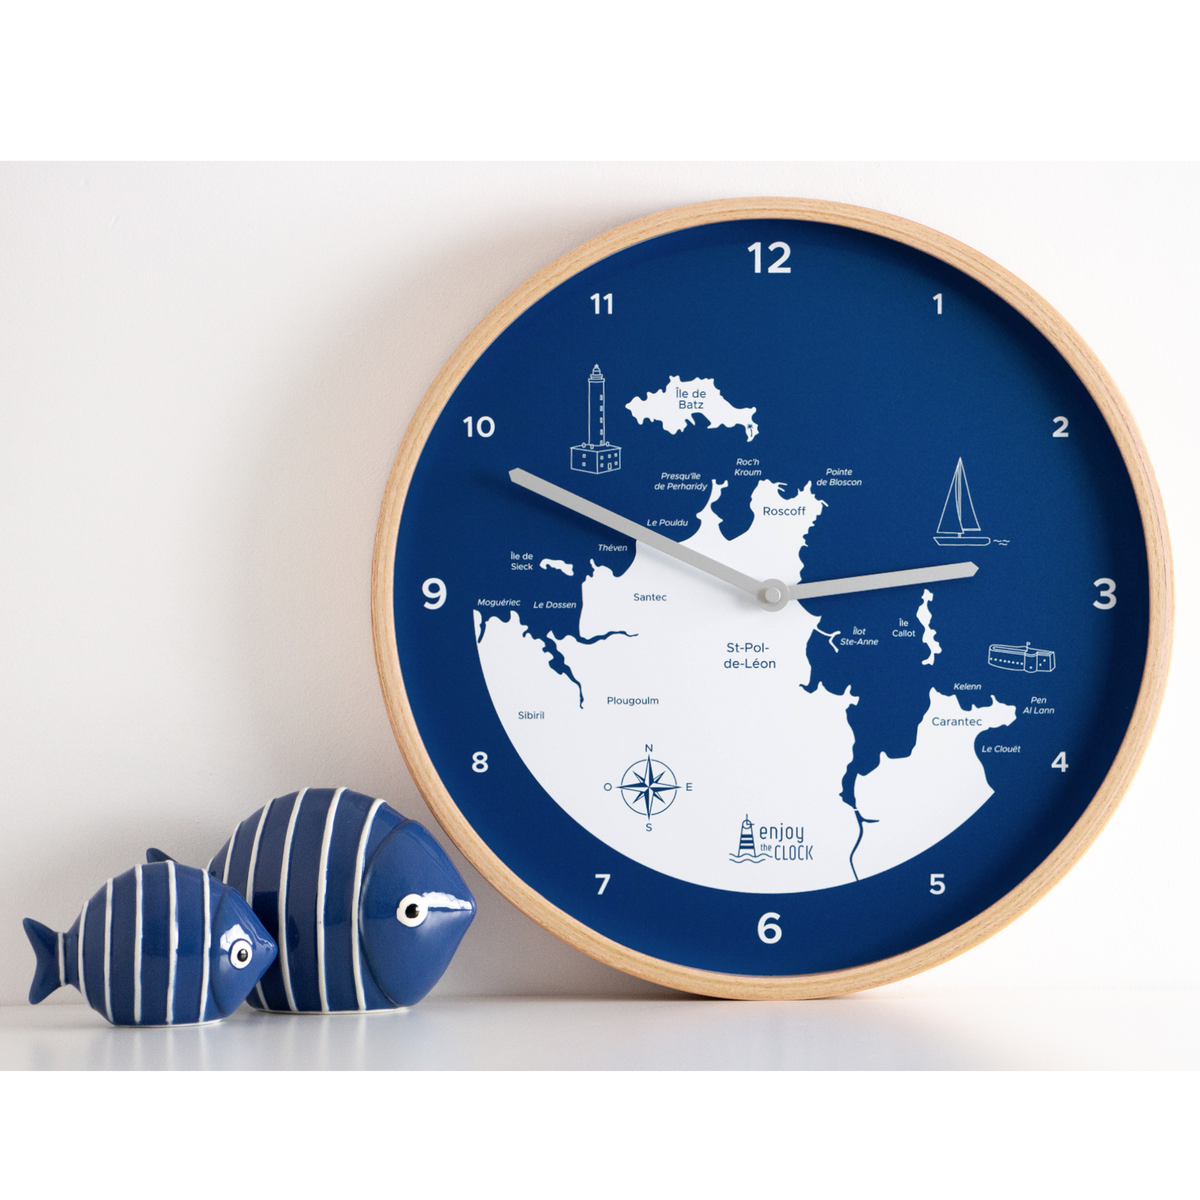 Horloge de Roscoff à Carantec